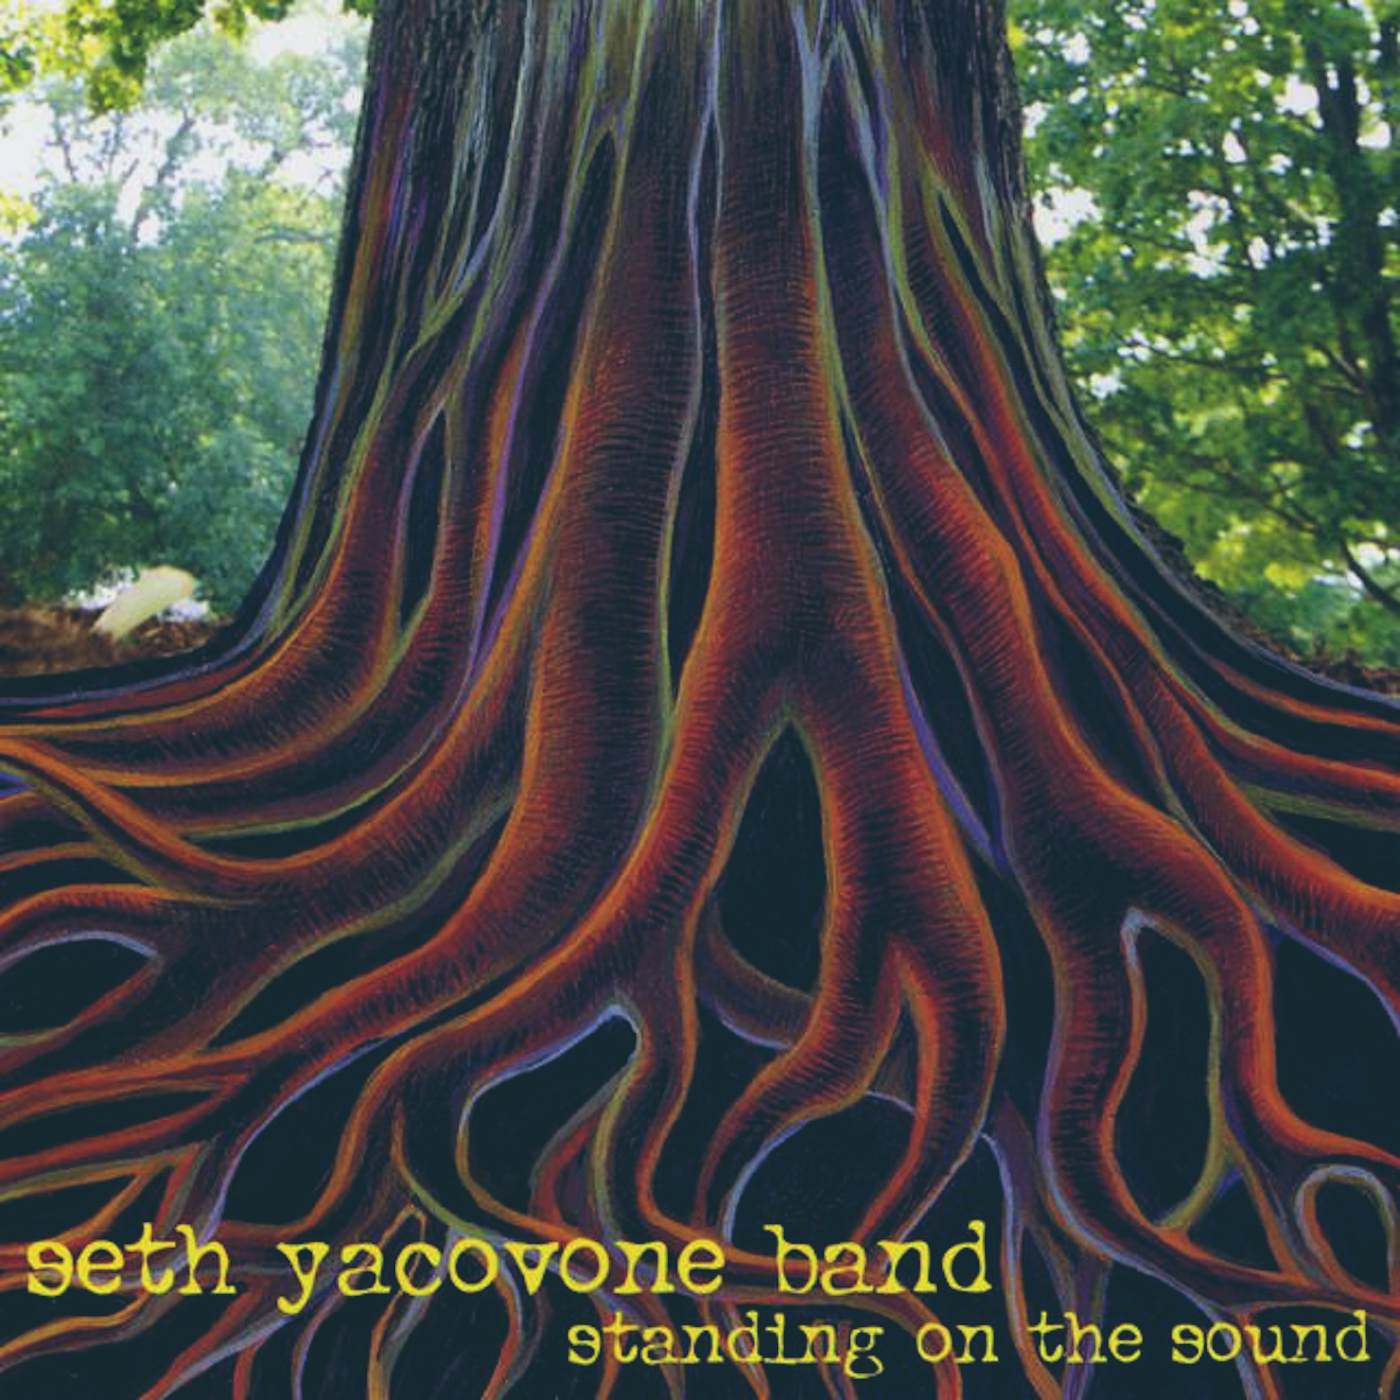 Seth Yacovone Band